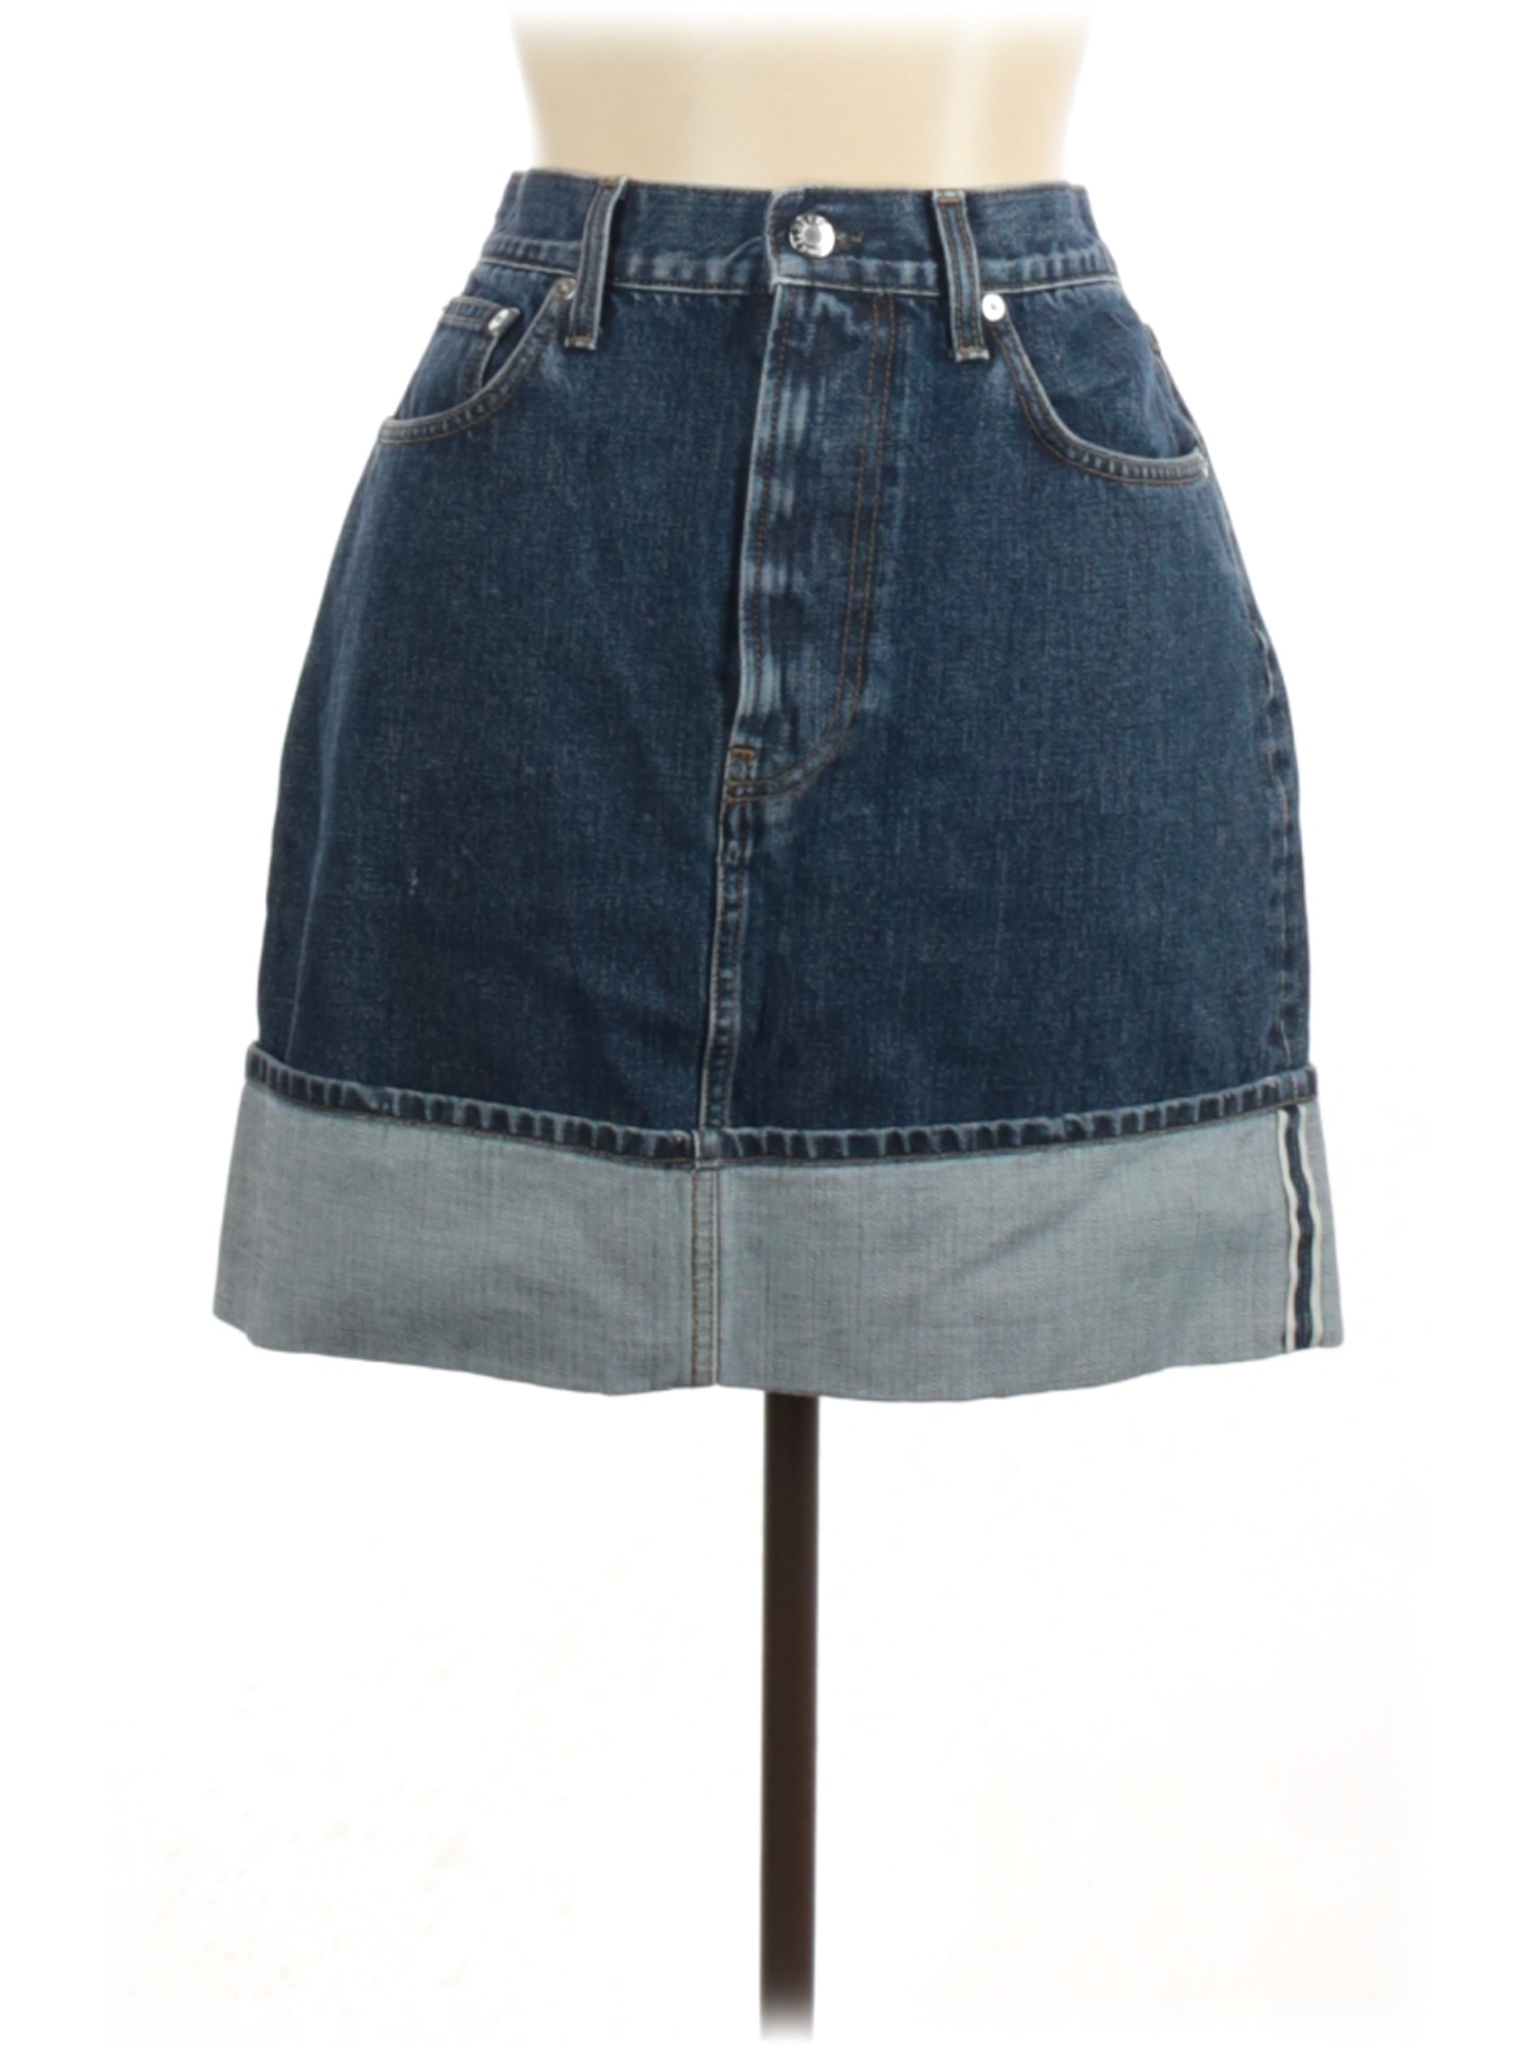 Helmut Lang 100% Cotton Solid Blue Denim Skirt 31 Waist - 75% off | thredUP